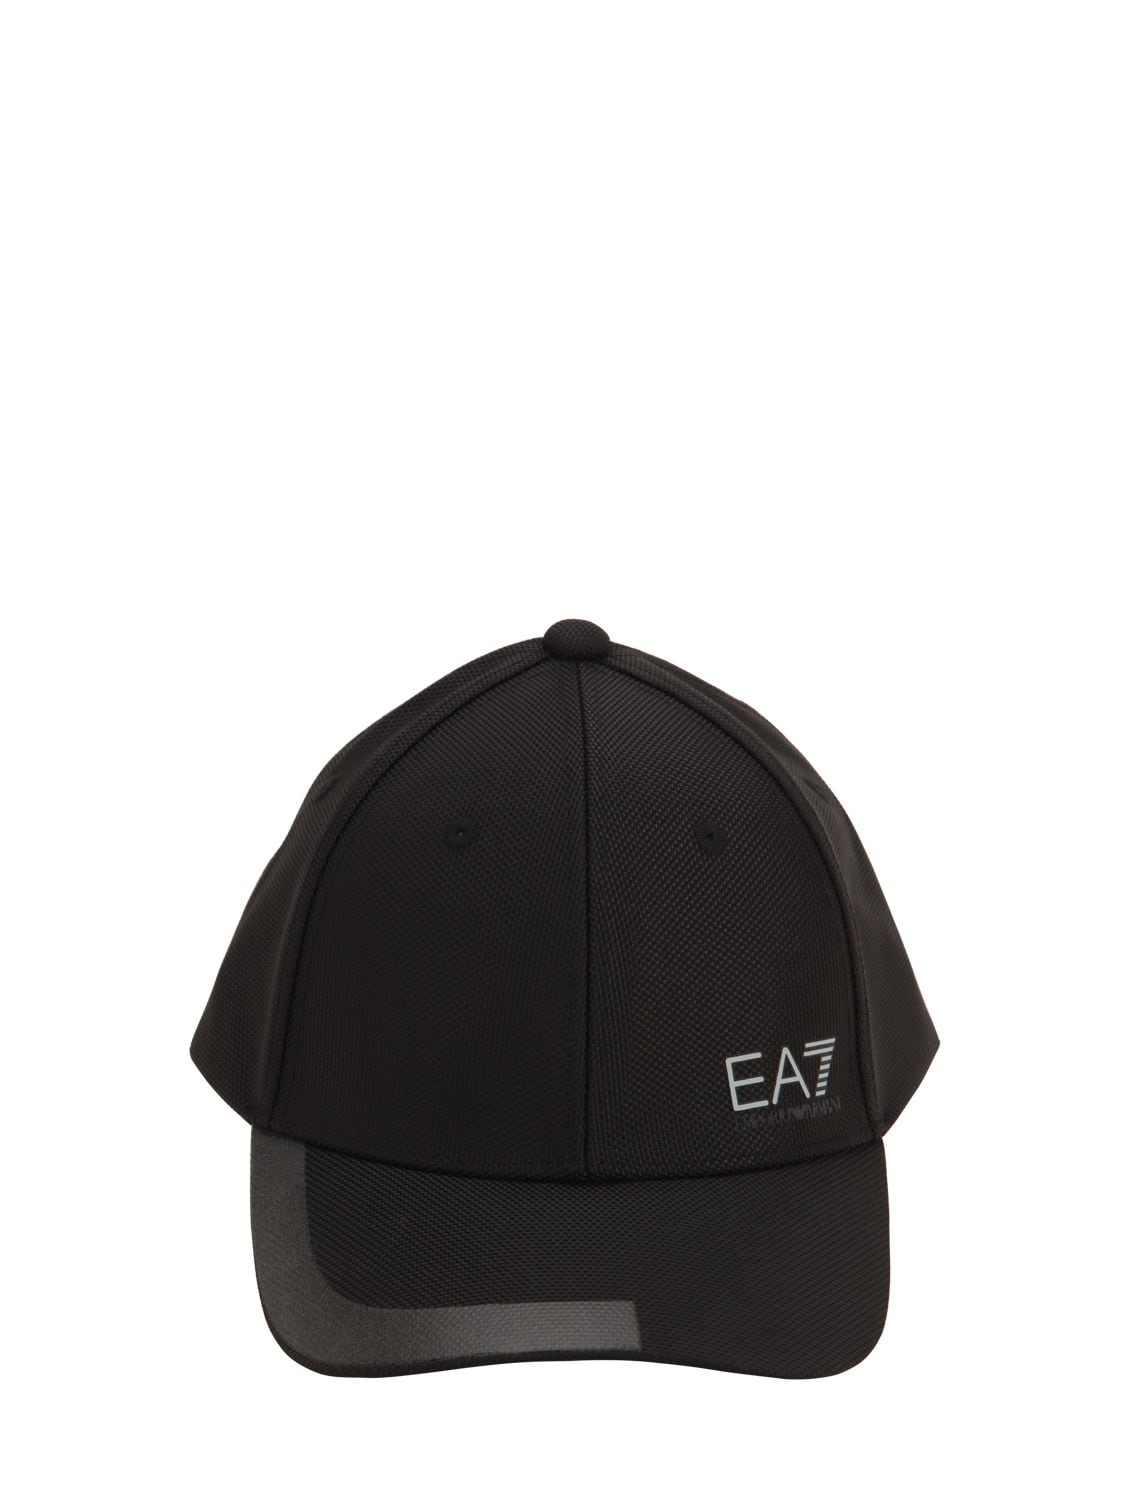 ea7 cap black